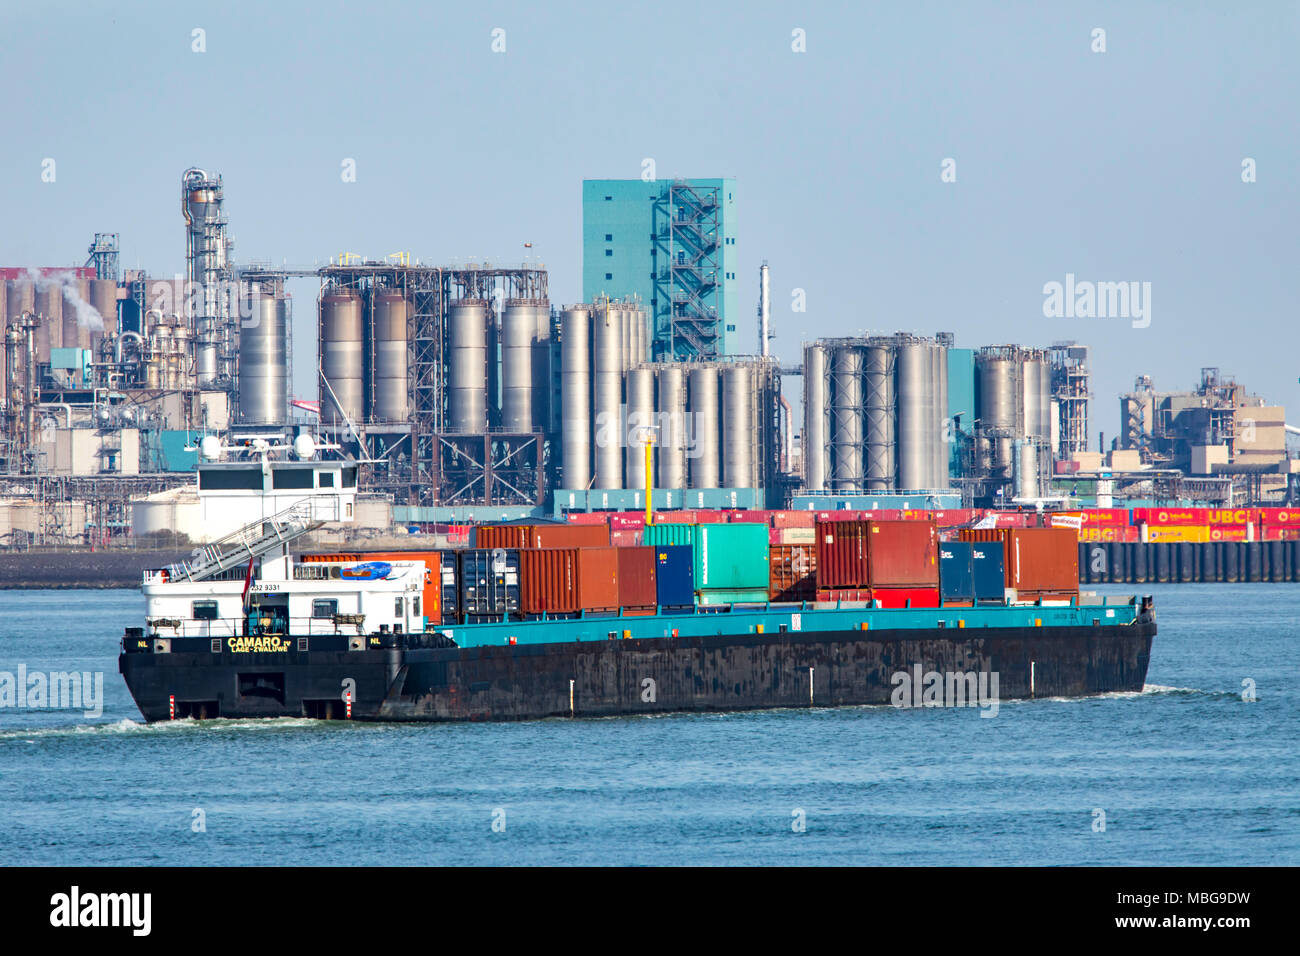 Der Hafen von Rotterdam, Niederlande, Maasvlakte 2 Deep Sea Port, auf einer künstlich angelegten Land weg die ursprüngliche Küste, BP-Raffinerie in Rotterdam B.V. Stockfoto